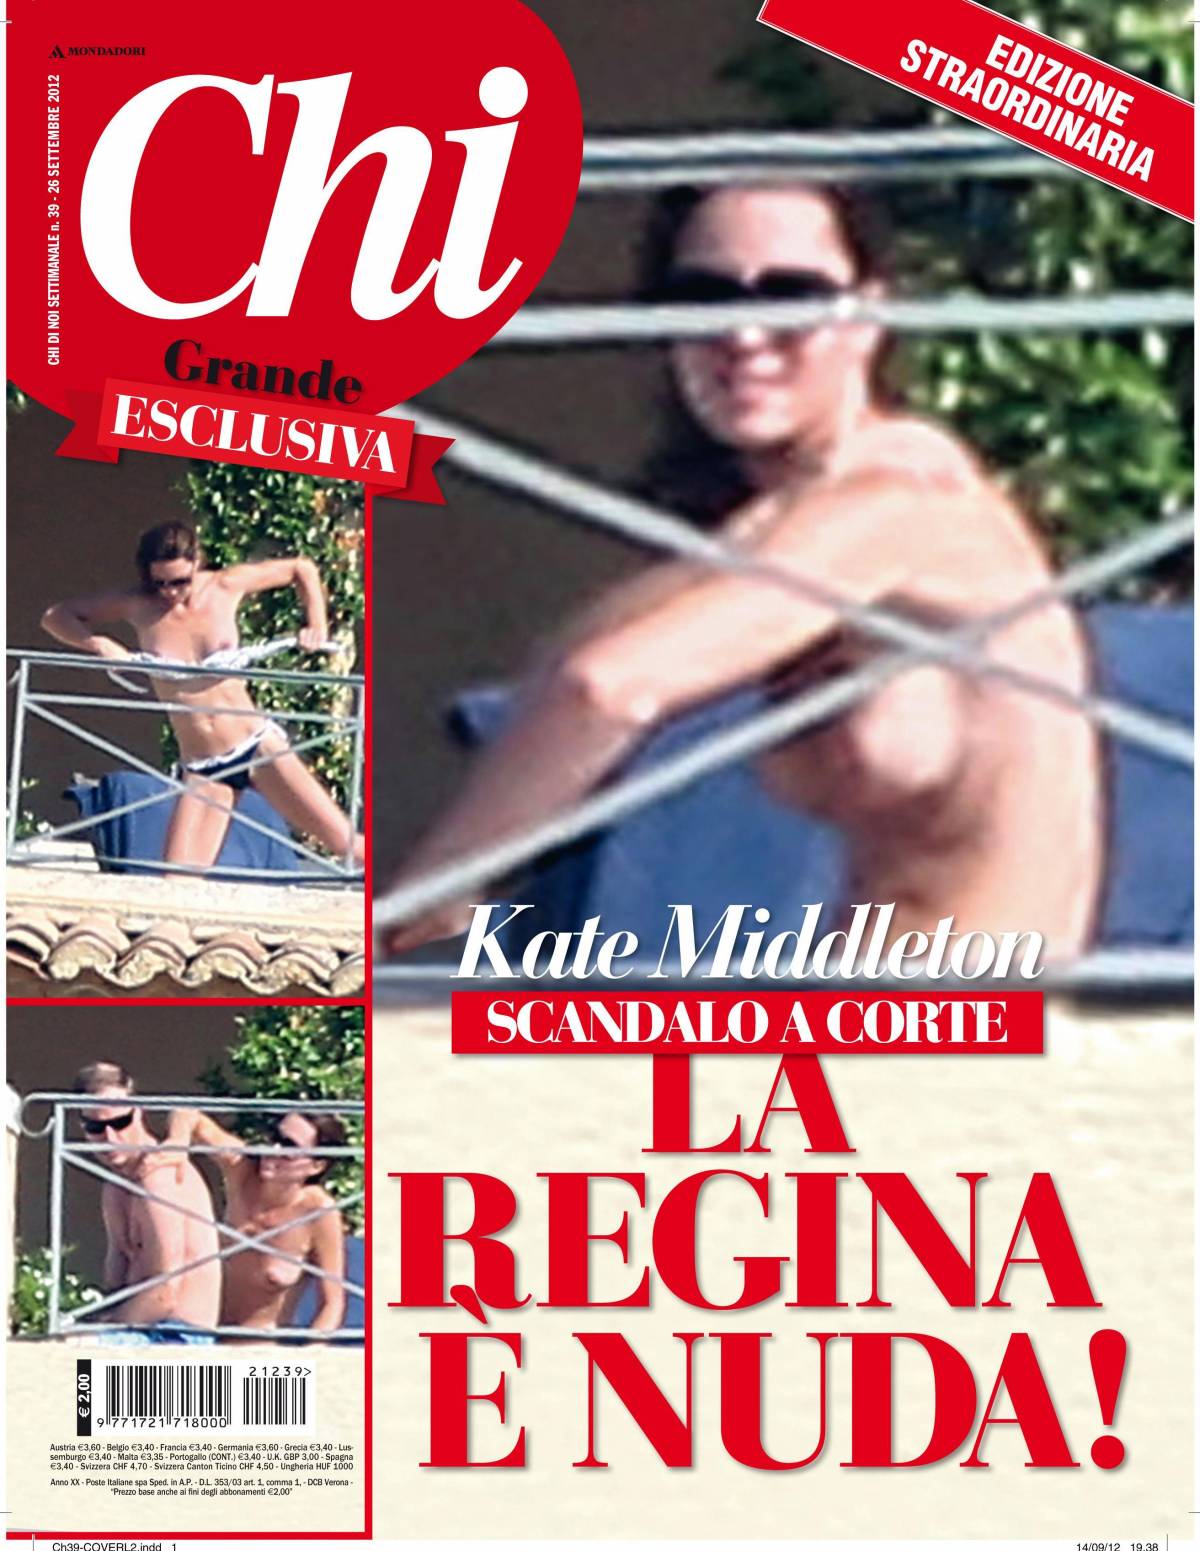 Nuda anche Kate Il topless rubato è un caso politico